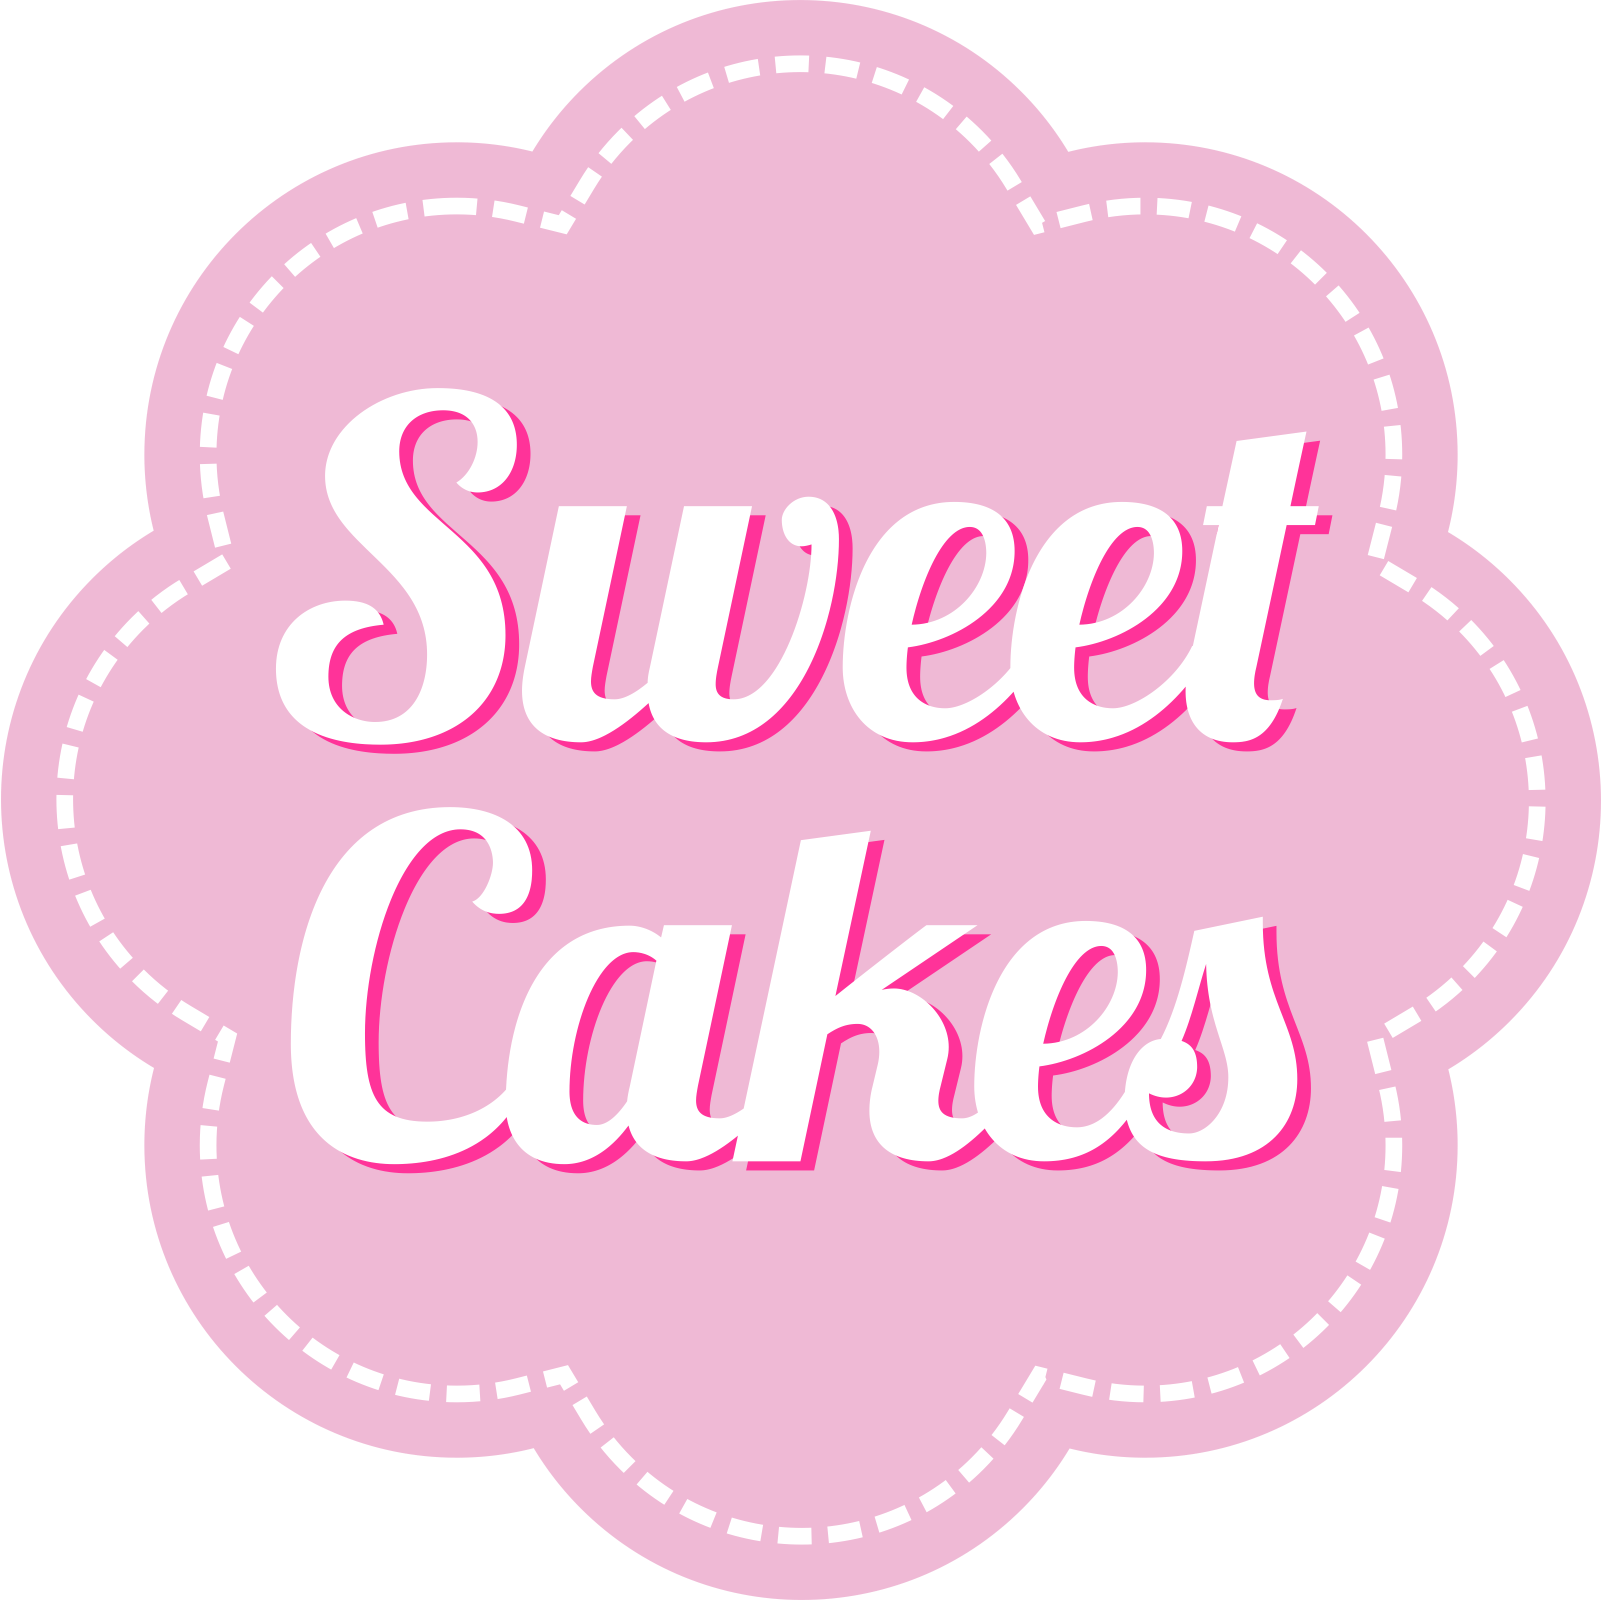 Sweet логотип. Sweet надпись. Cake надпись. Sweet Cake лого. Sweet choose